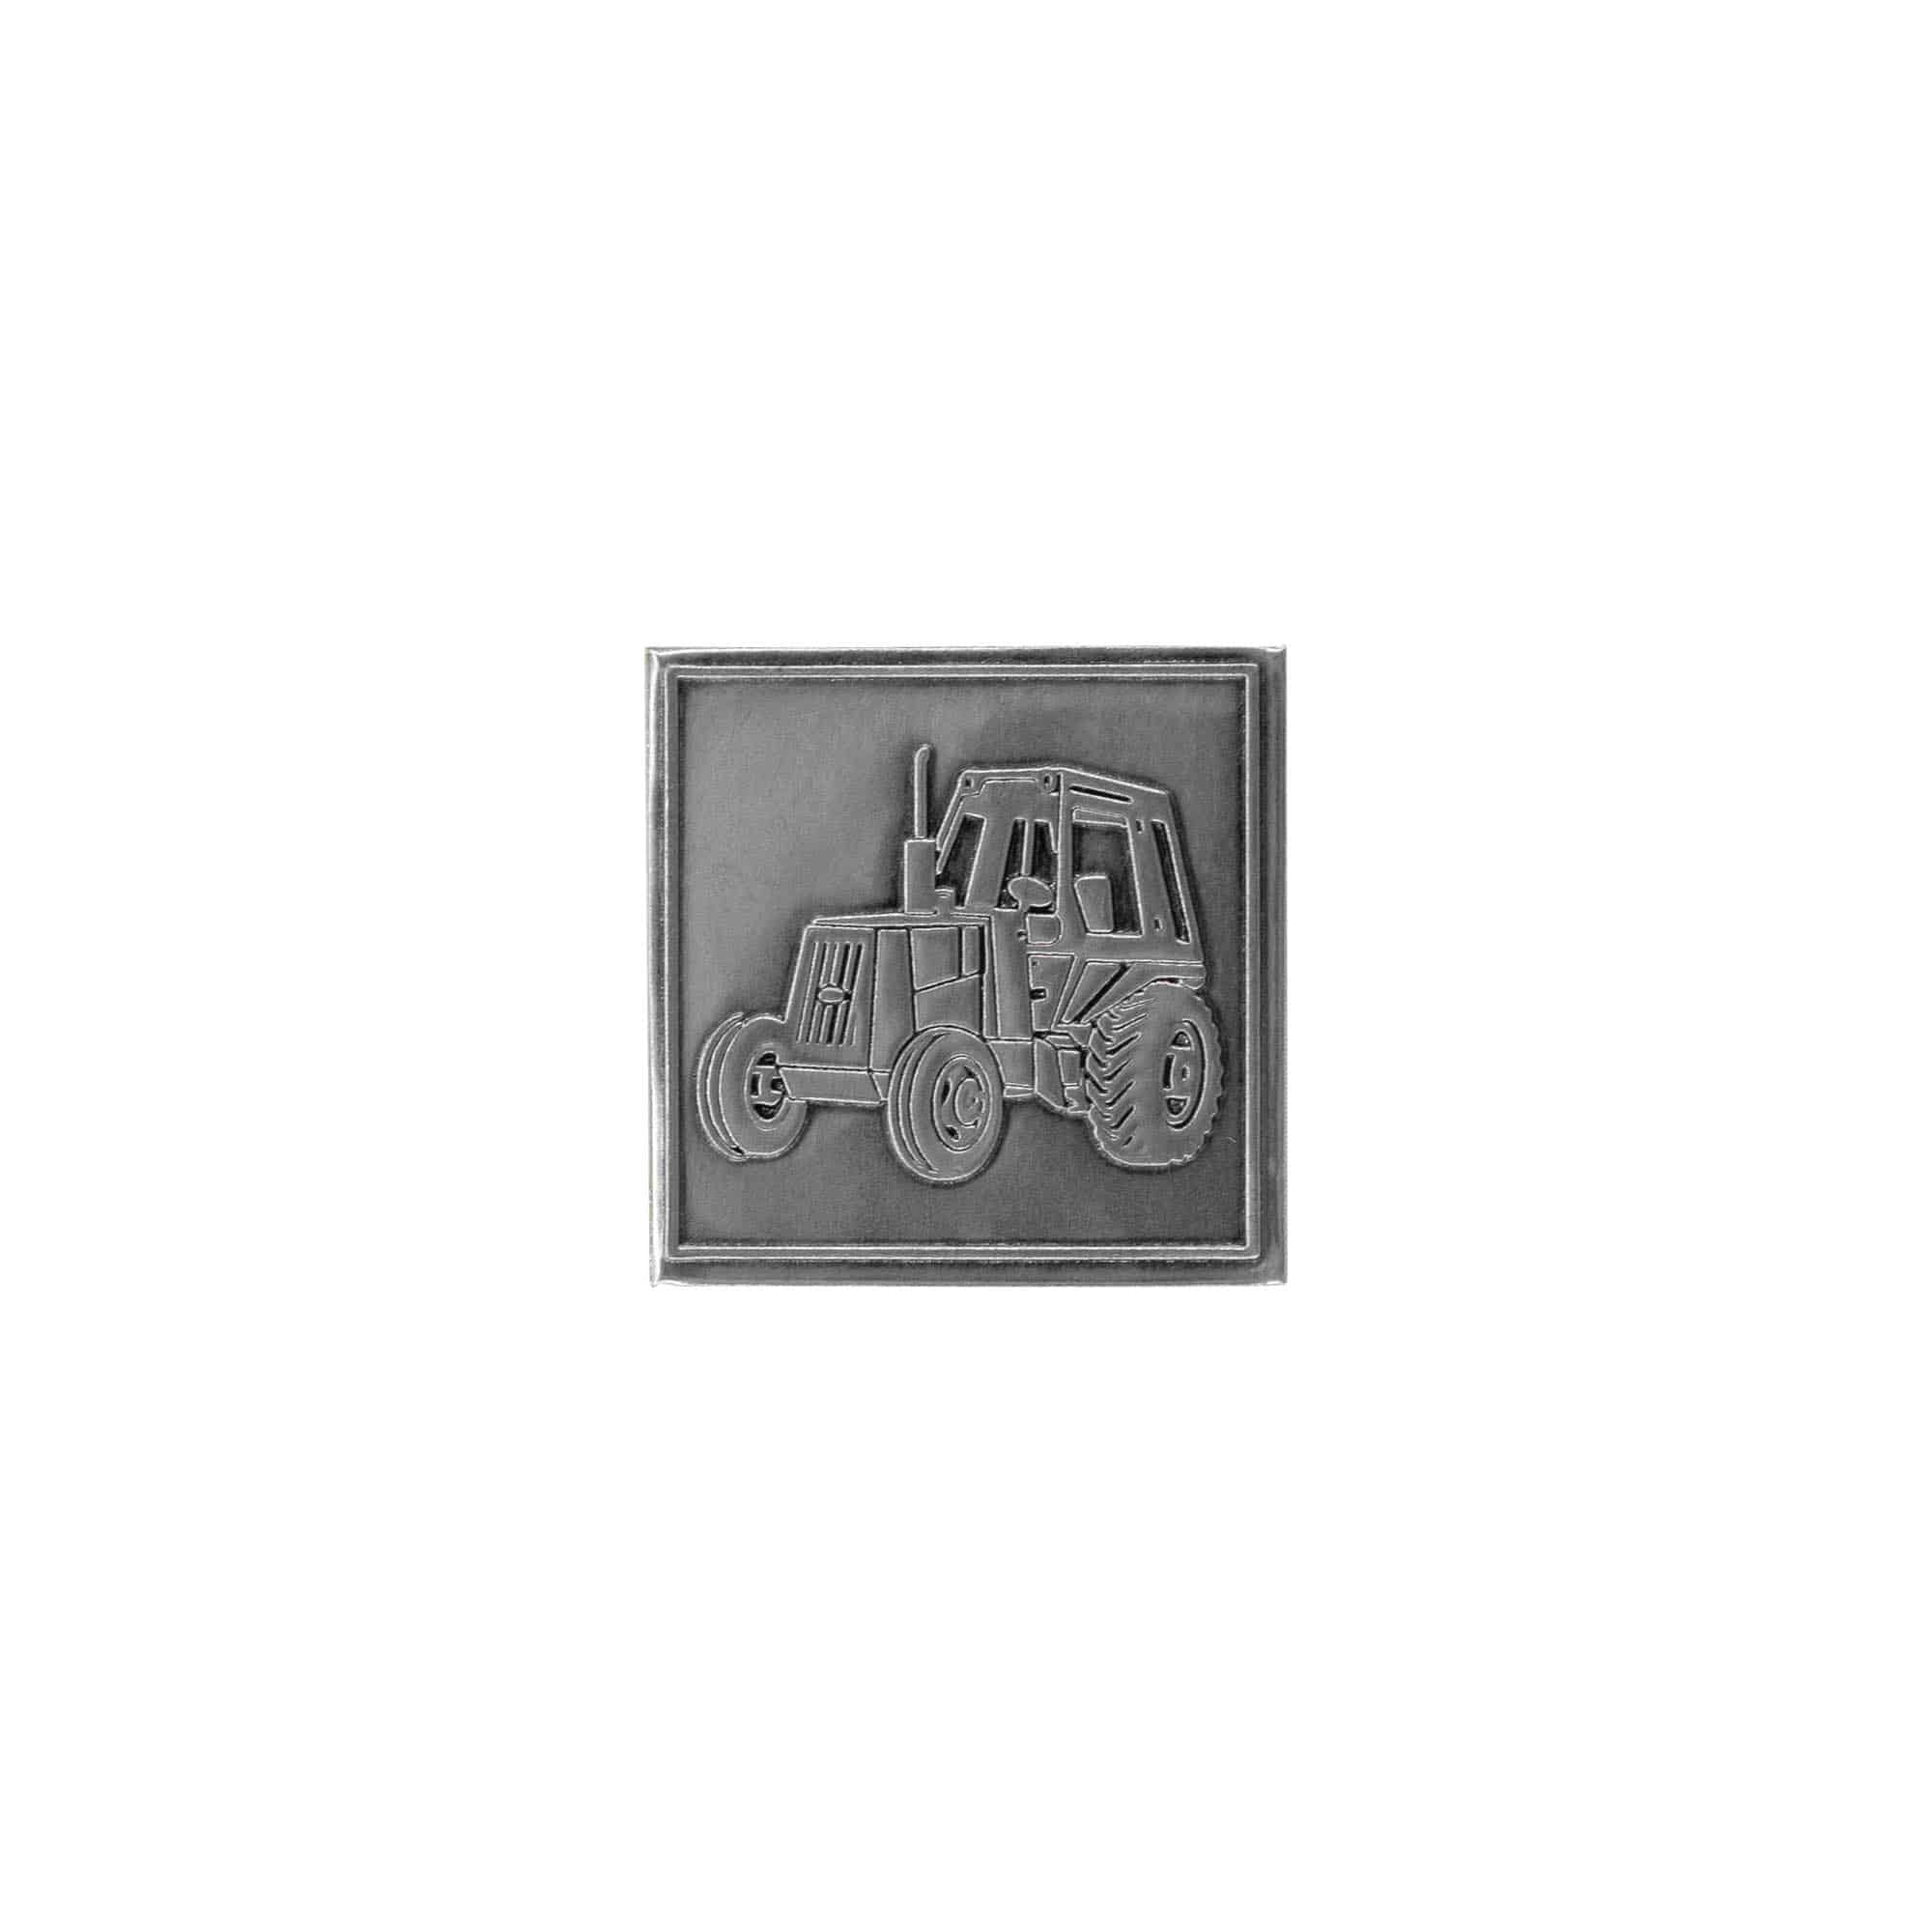 Cínový štítek 'Traktor', čtvercový, kov, stříbrný